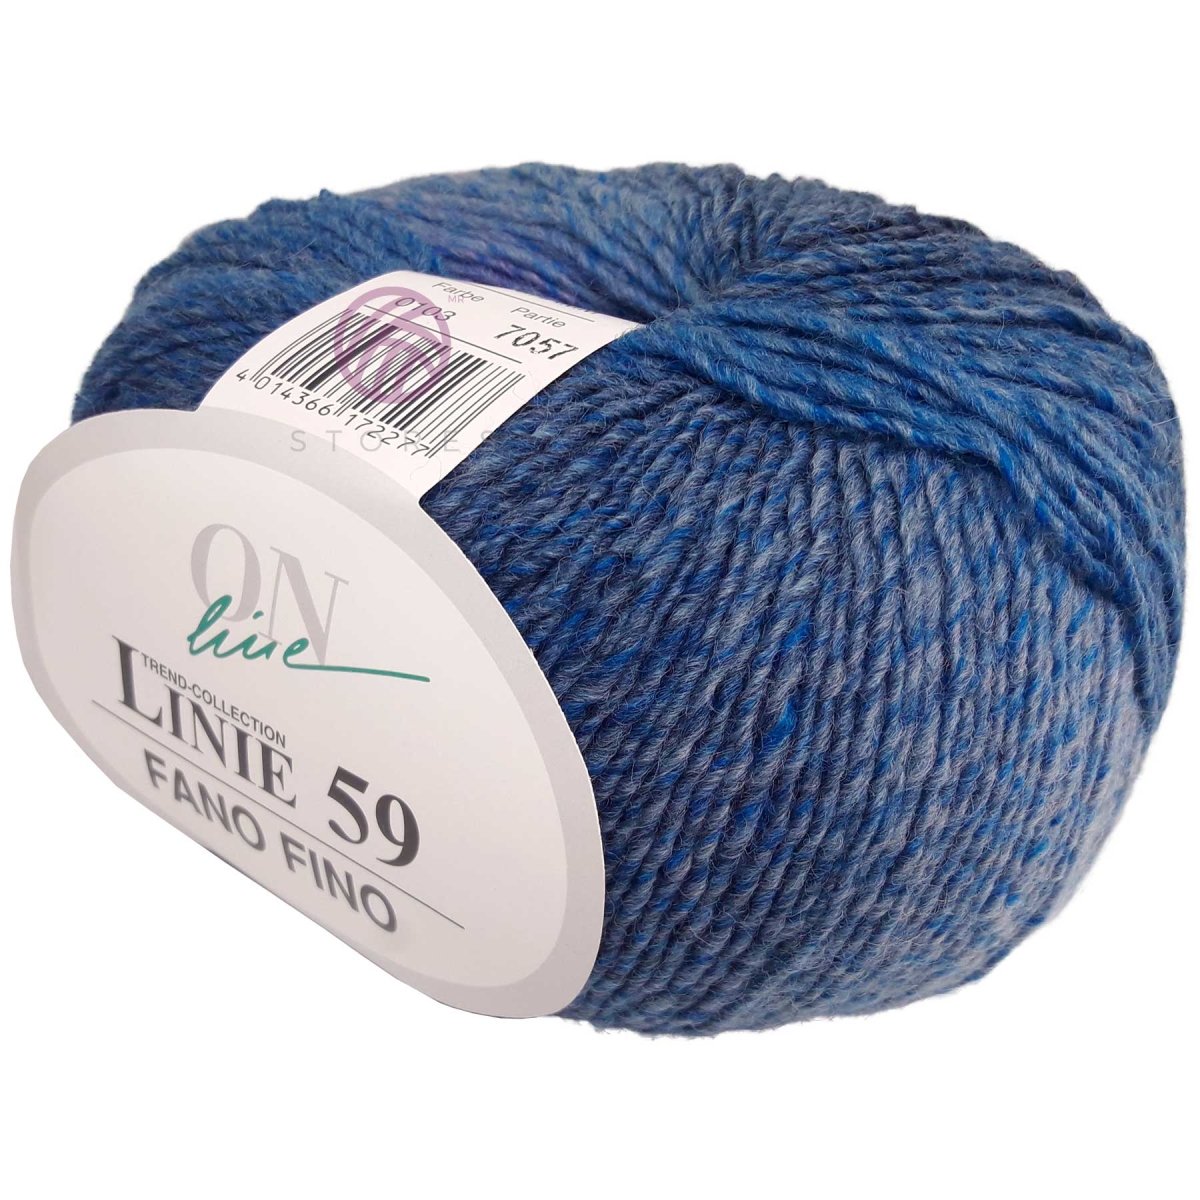 FANO FINO - Crochetstores110059-1014014366172253